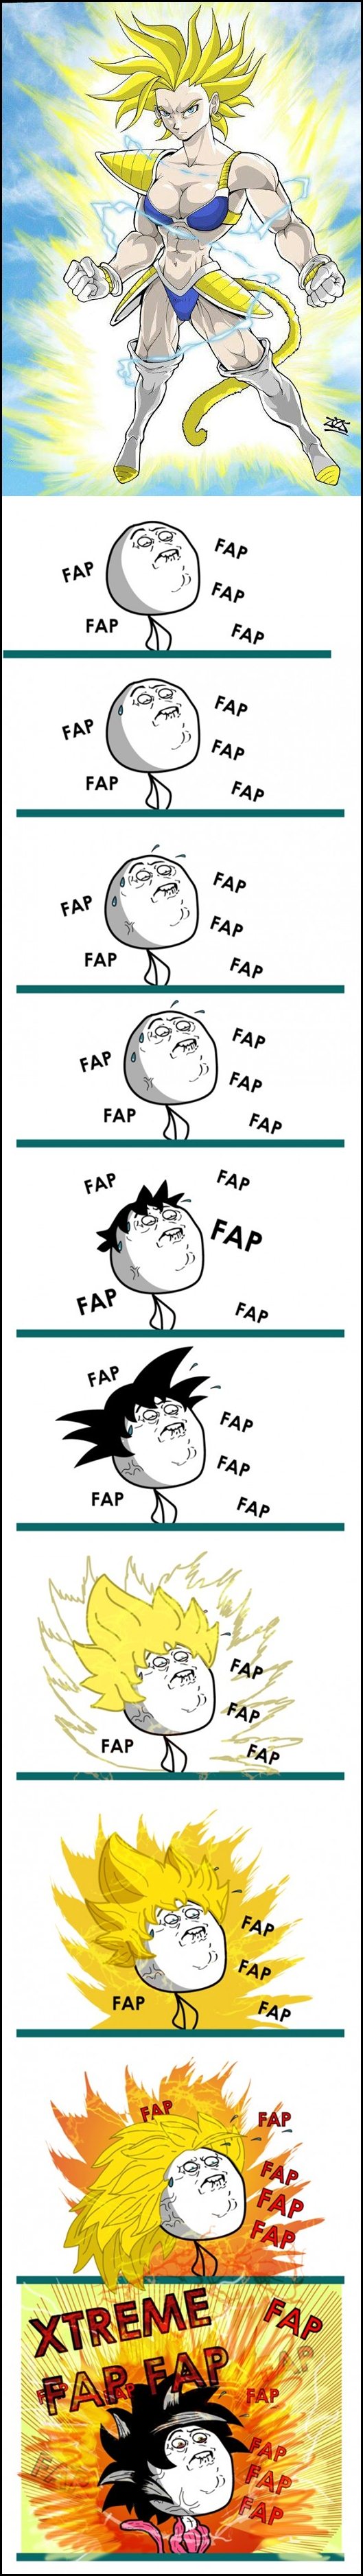 Goku fap fap - meme